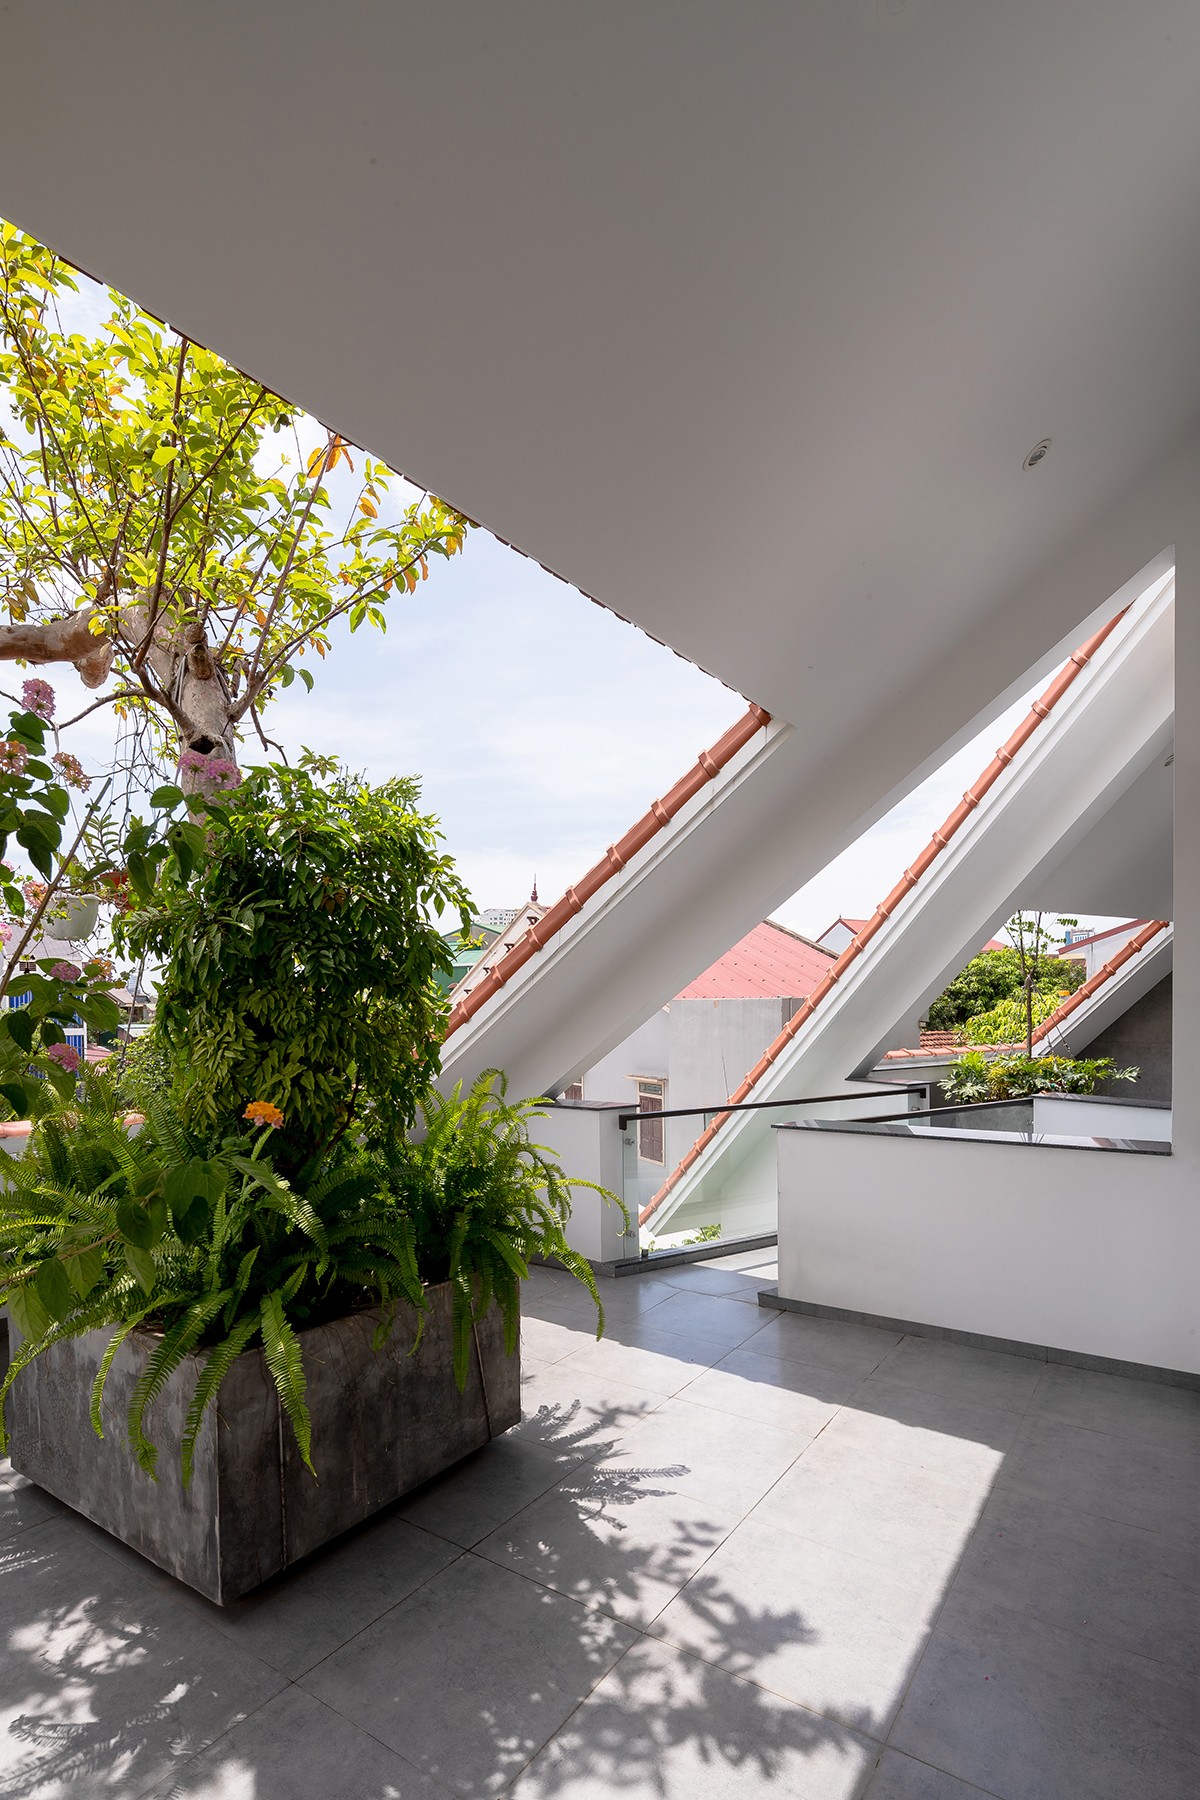 
Thiết kế mái thủng tạo điểm nhấn cho căn nhà, giúp đón sáng cho khu vườn sân thượng
